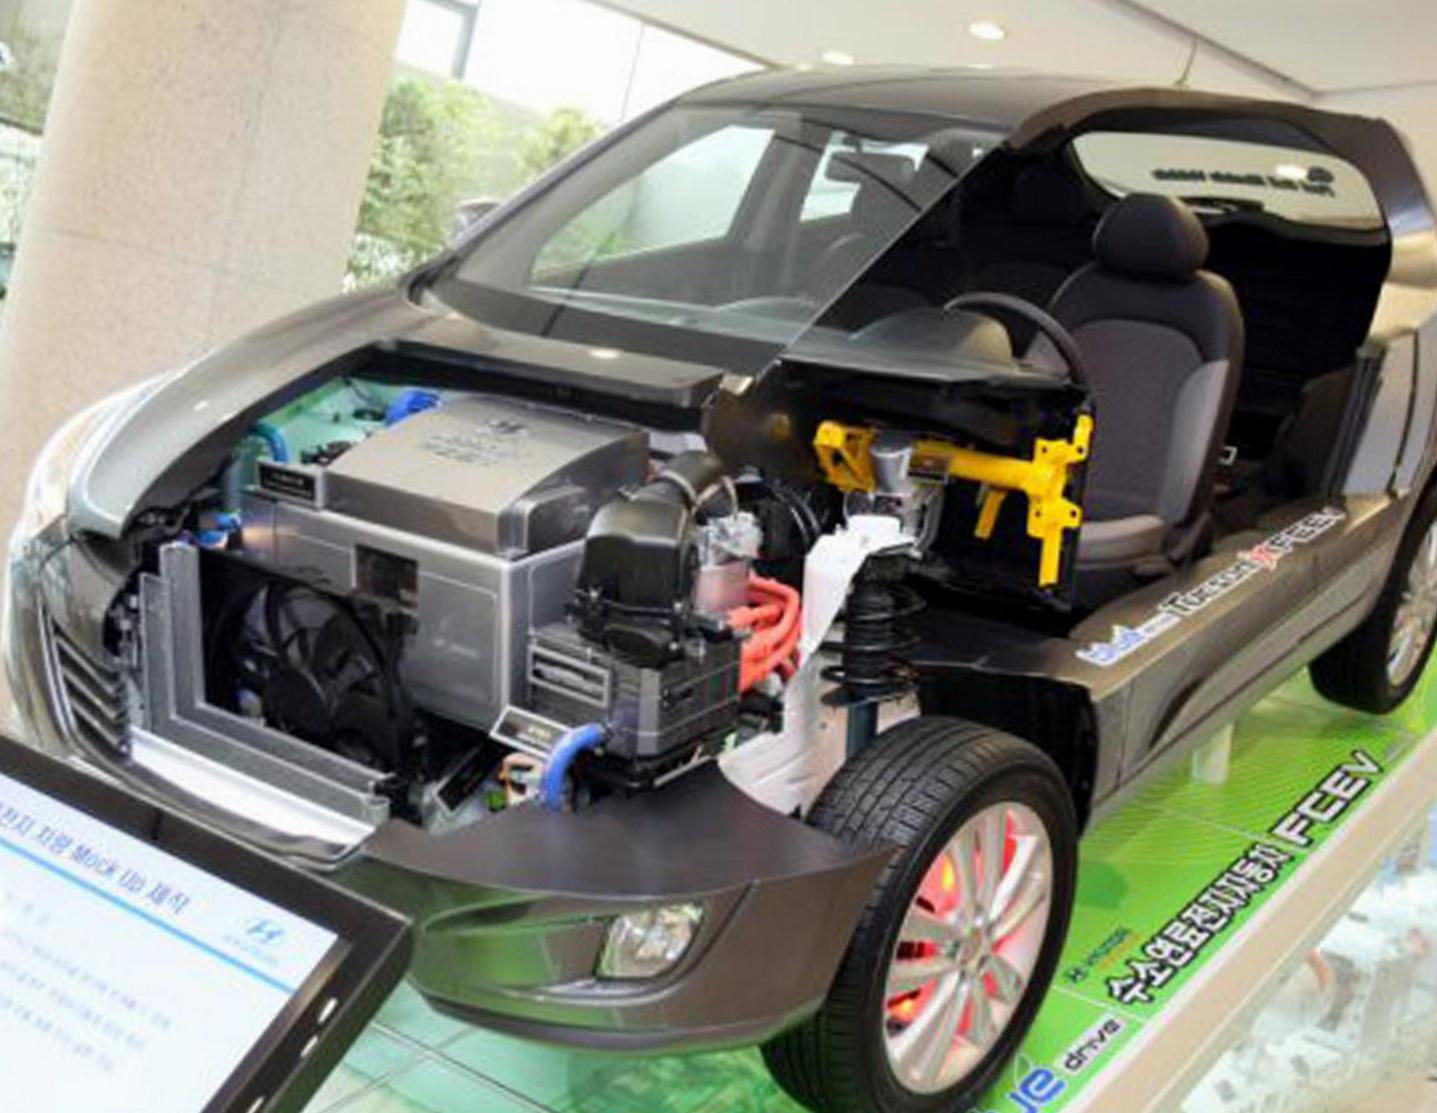 ix35 Fuel Cell Hyundai models 2012